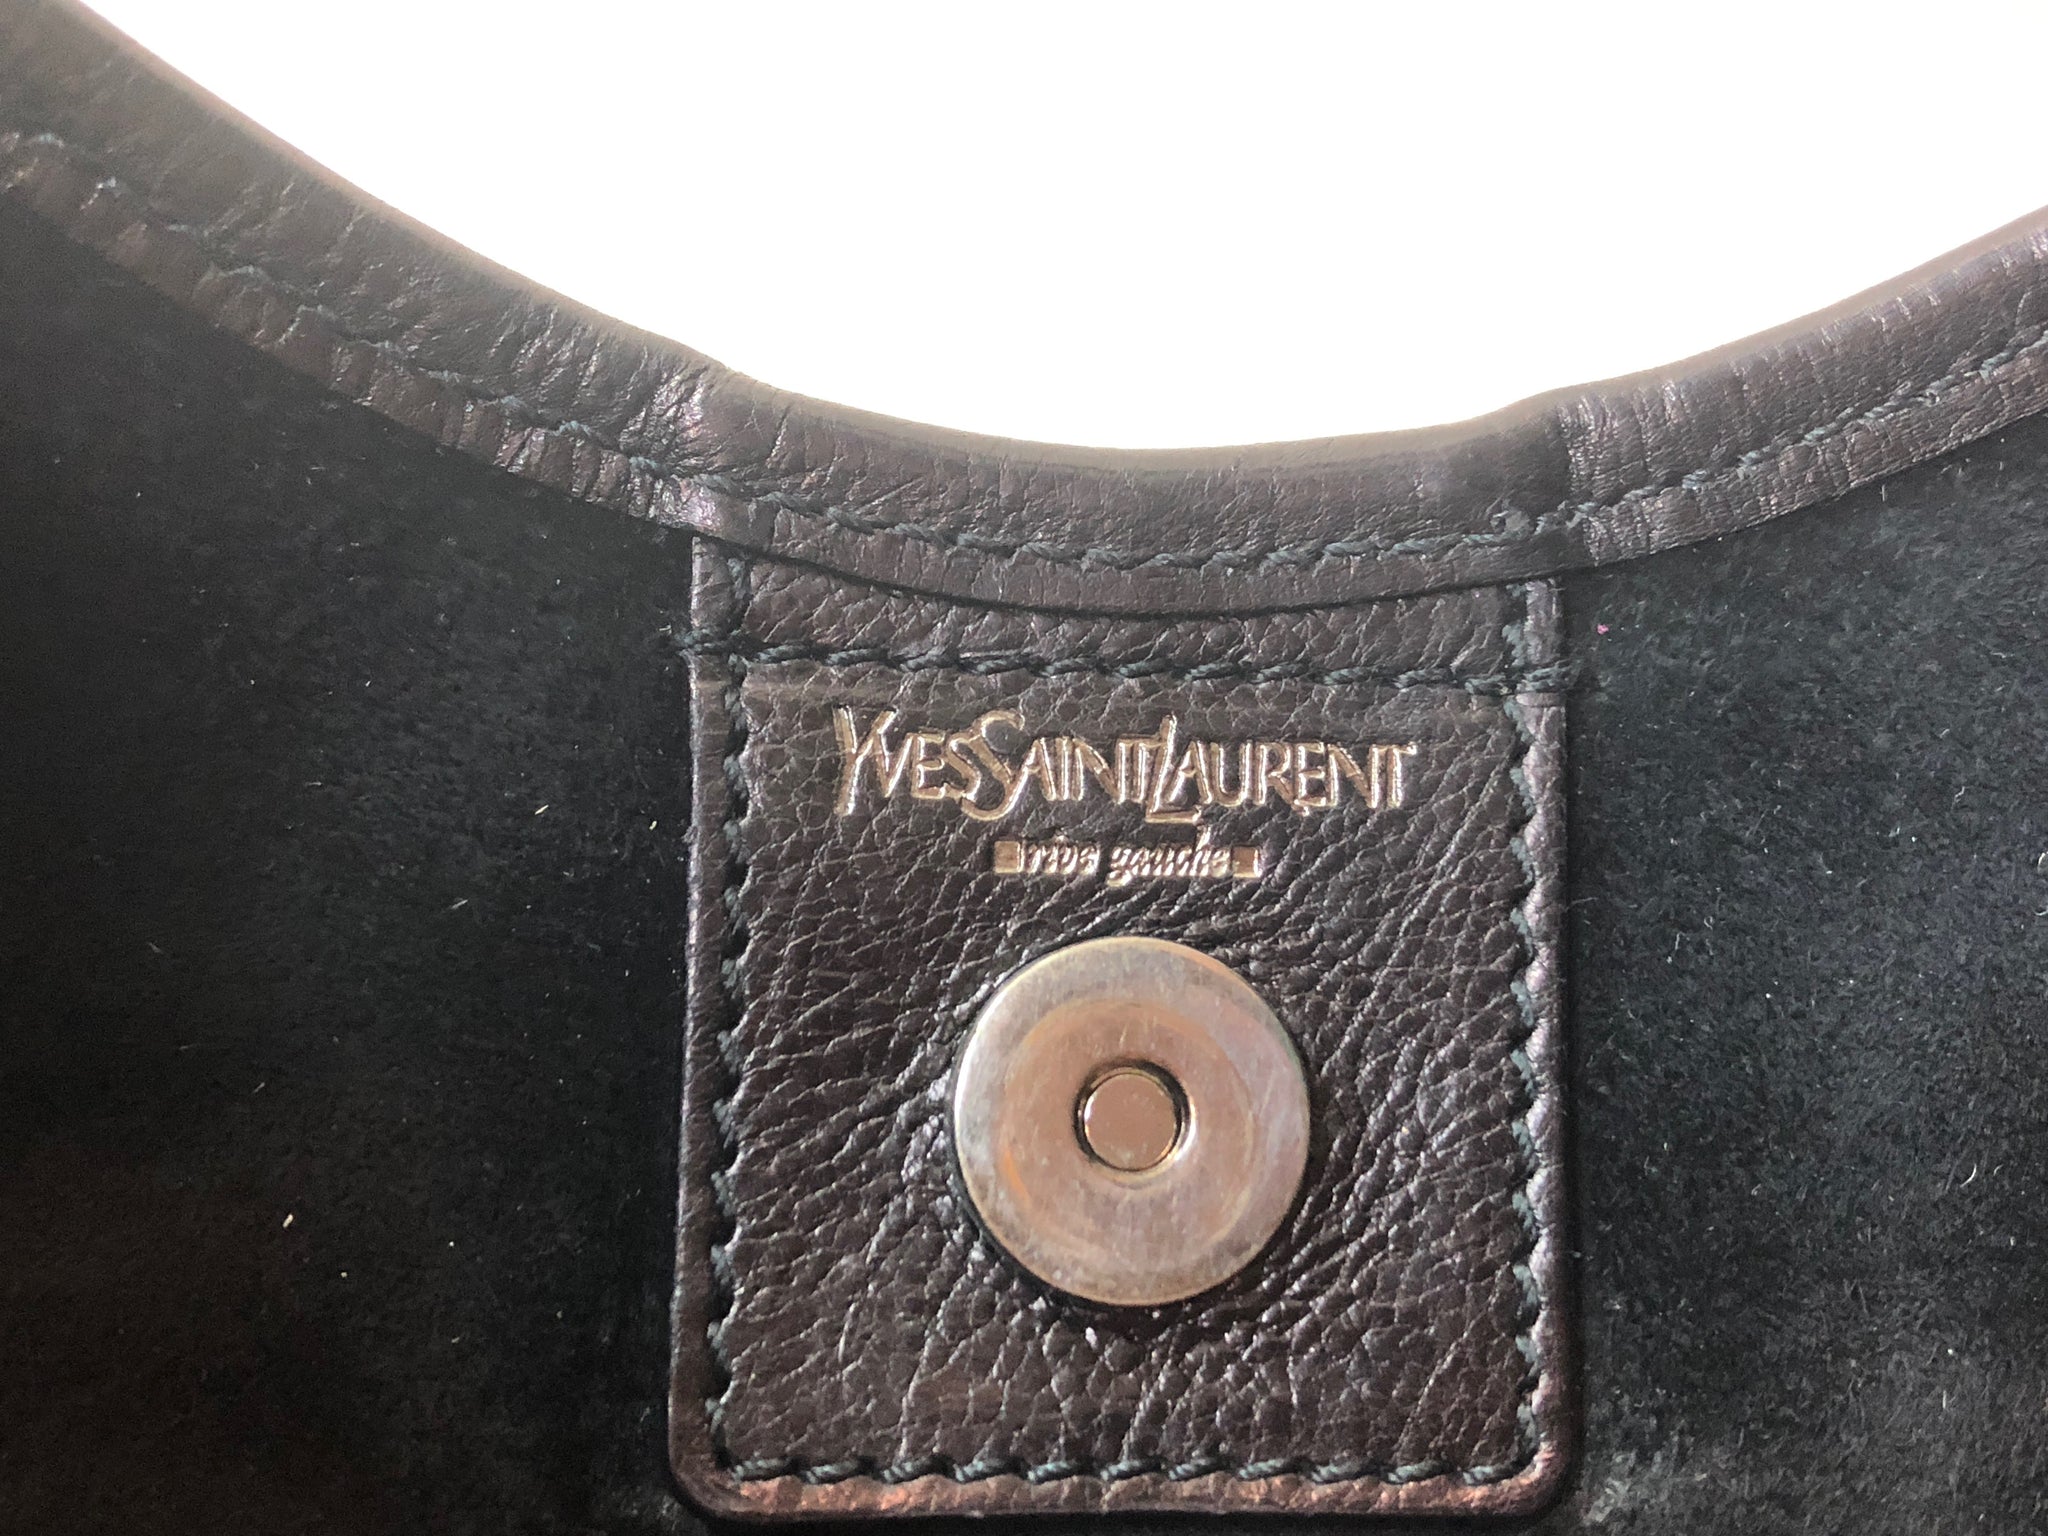 Сумка ysl mombasa pony horn bag, оригинал — цена 3500 грн в